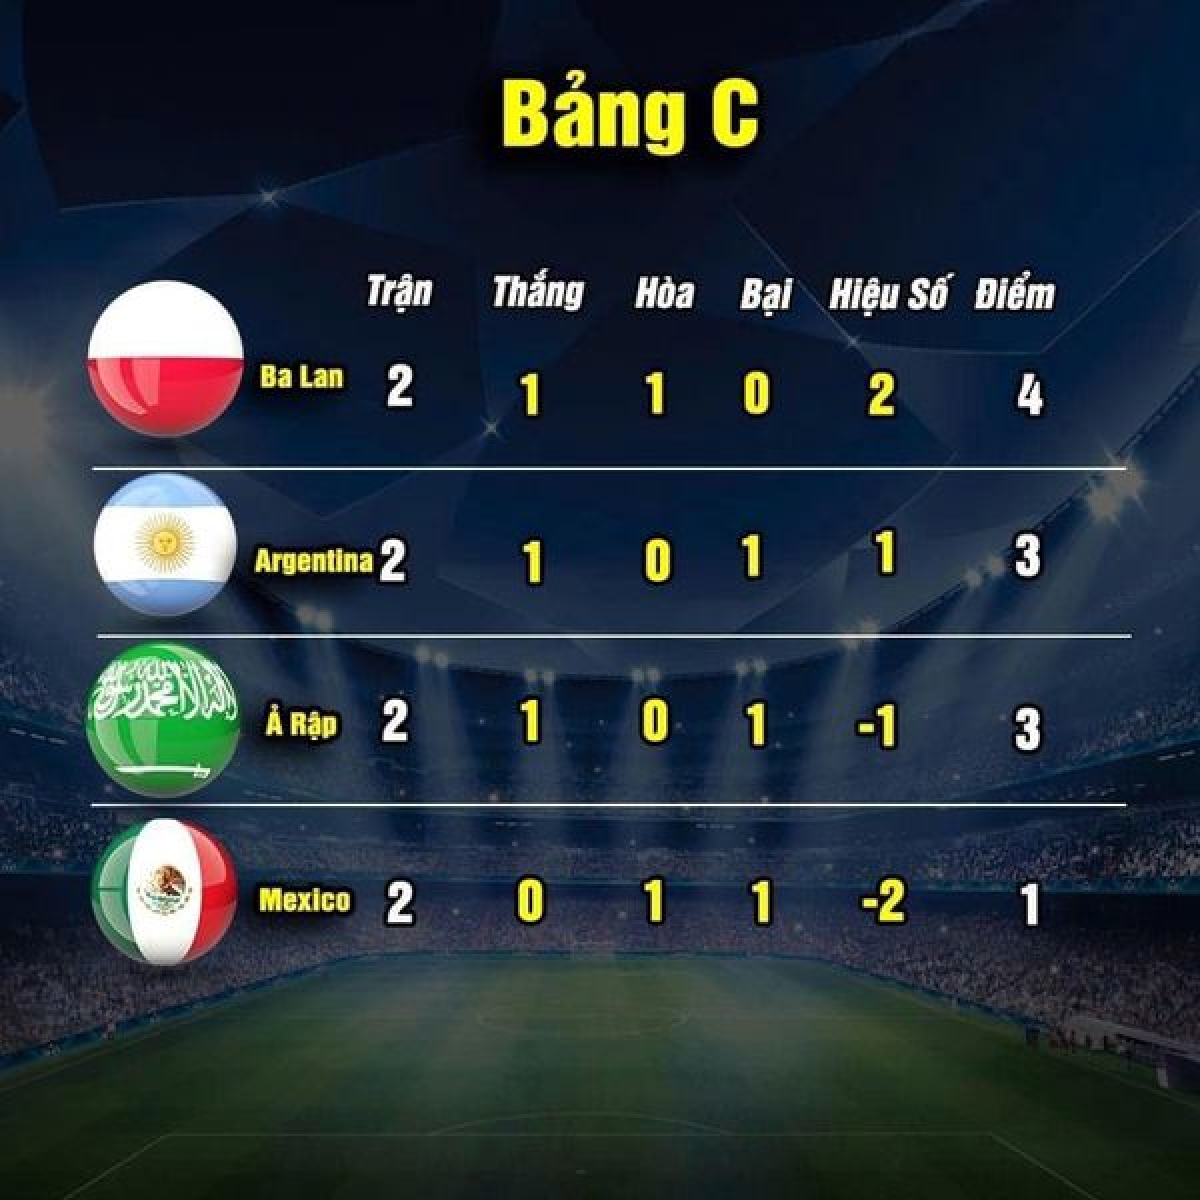 Cục diện bảng C sau hai lượt trận (ảnh: Thethao.vn) 